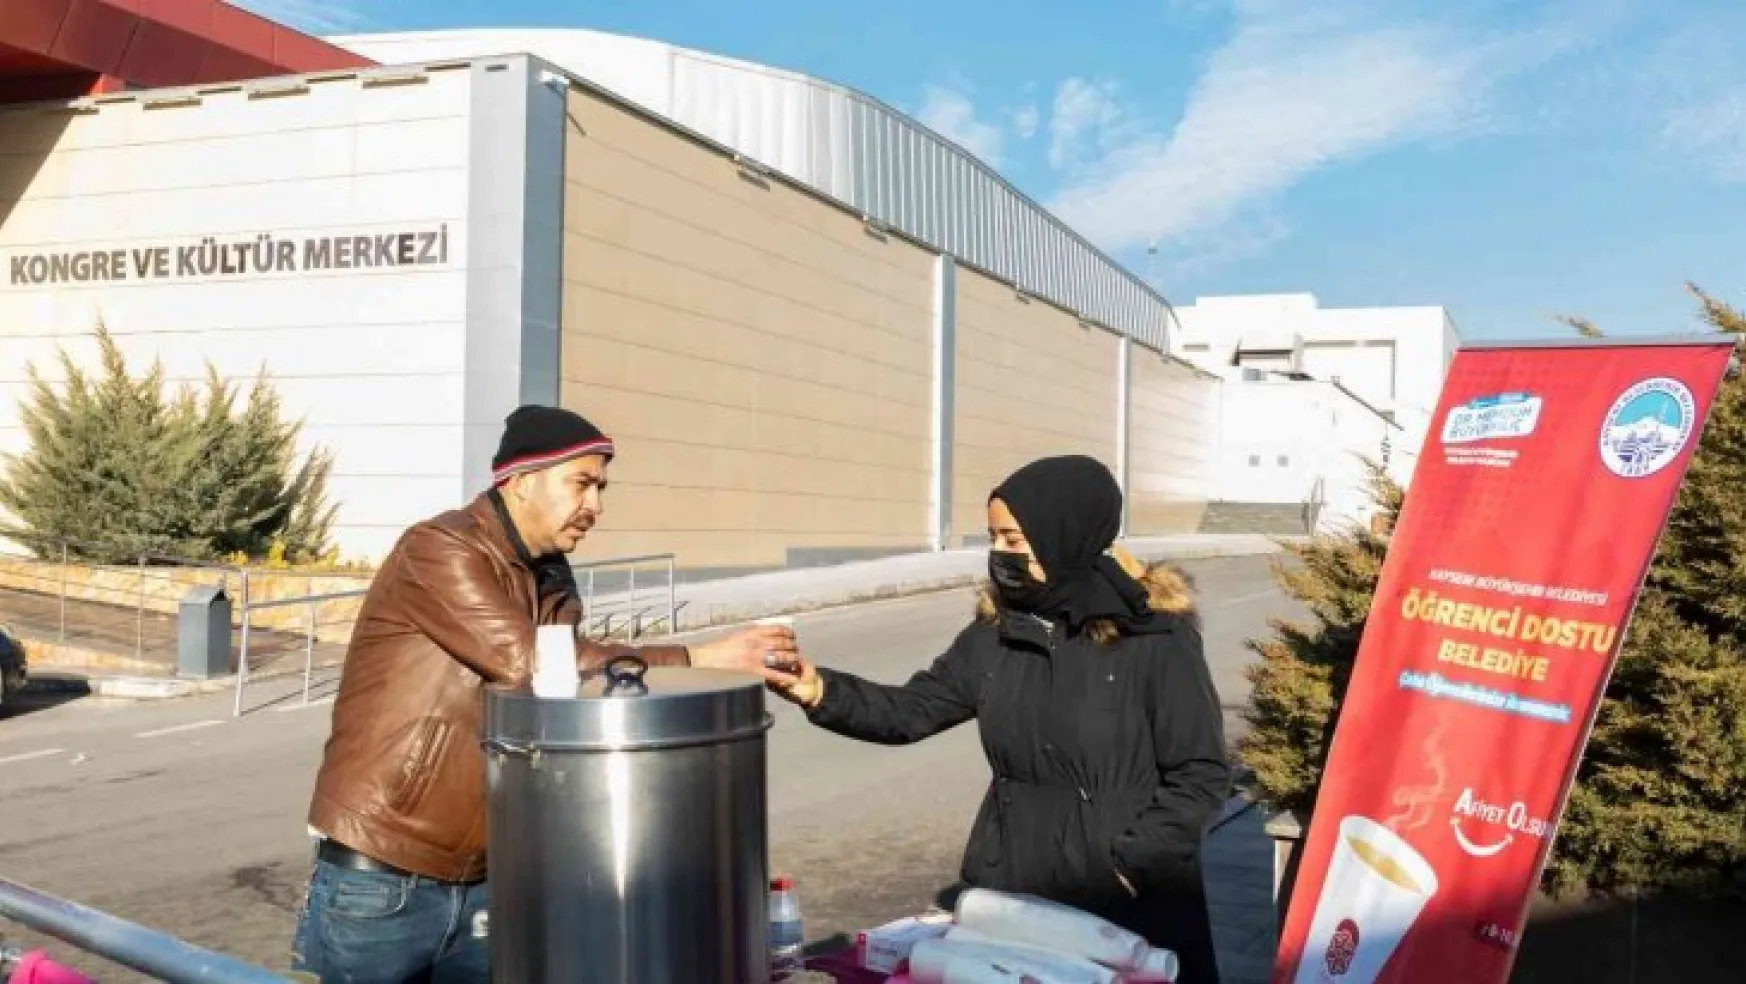 Kayseri Büyükşehir Belediyesi'nden KAYÜ Öğrencilerine Sıcak Çorba İkramı